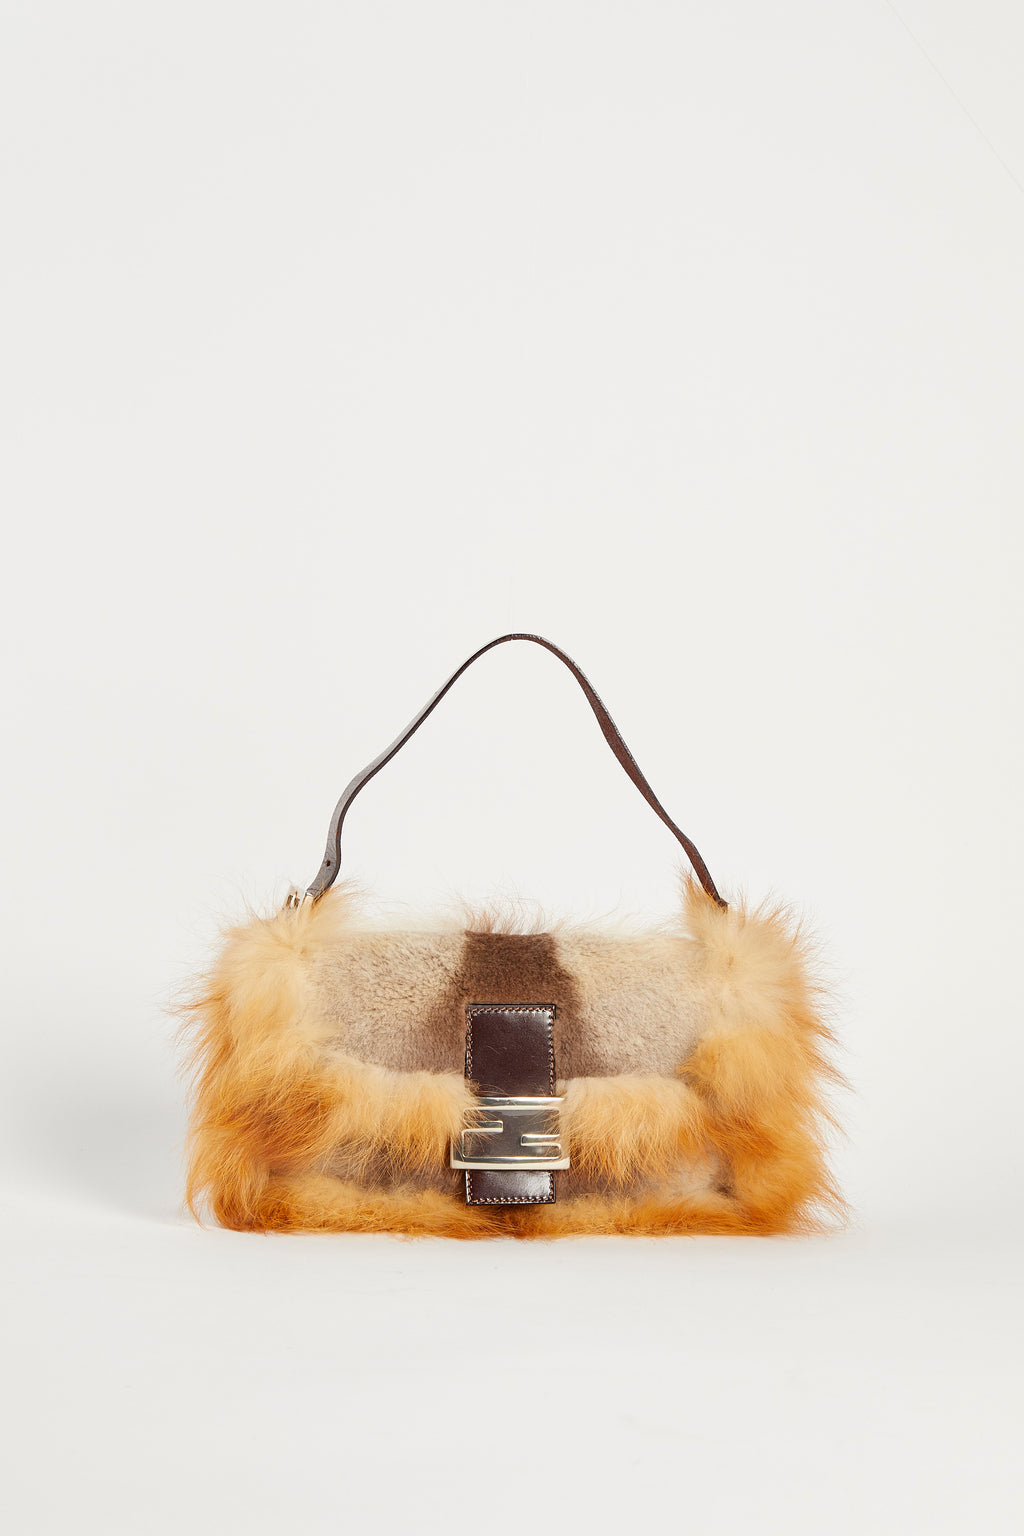 Vintage Fendi Brown Fox Fur Baguette Shoulder Bag